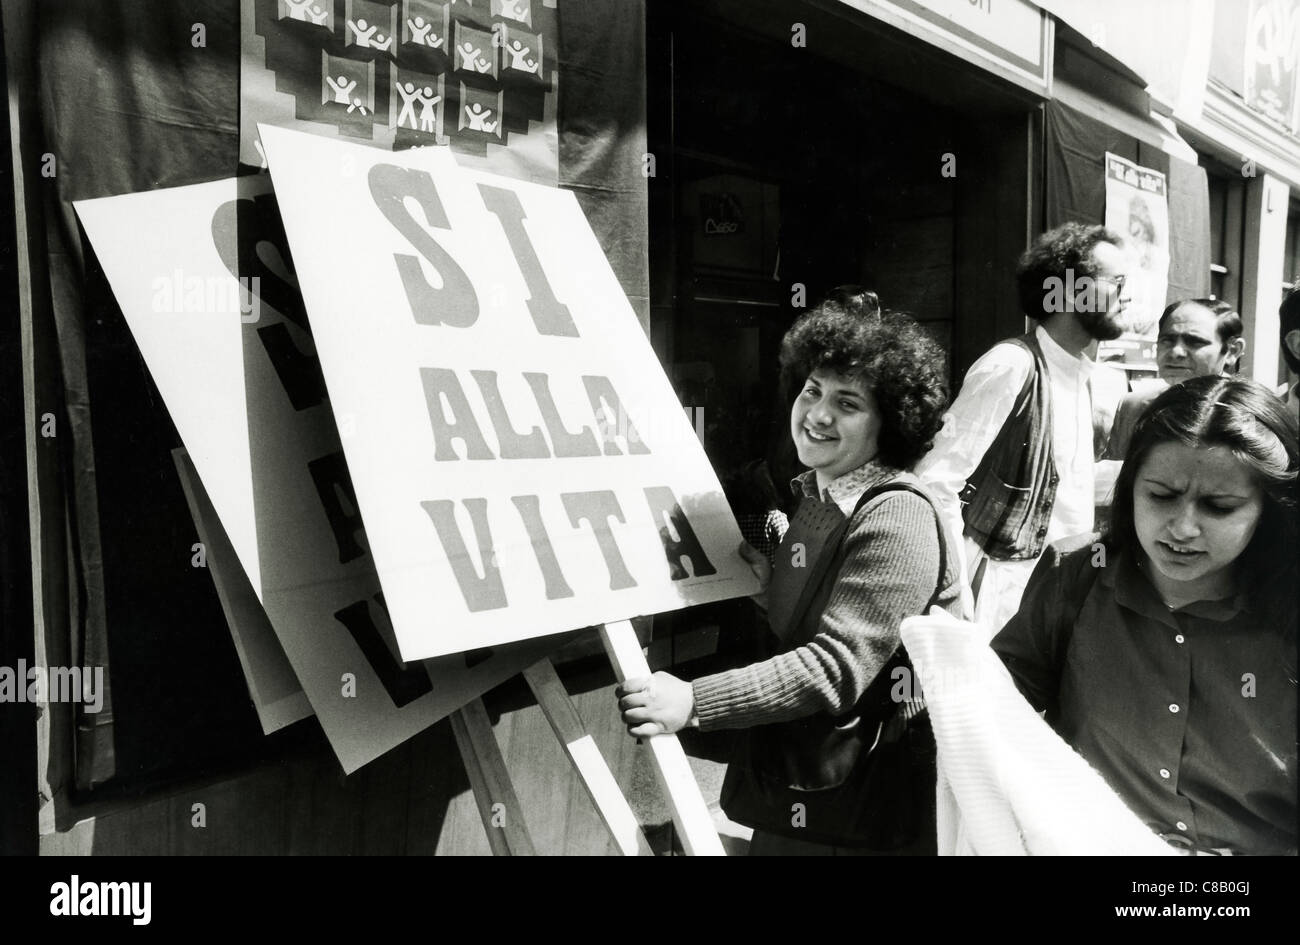 Manifestazione cattolica contro la legalizzazione dell aborto,1976 Foto Stock